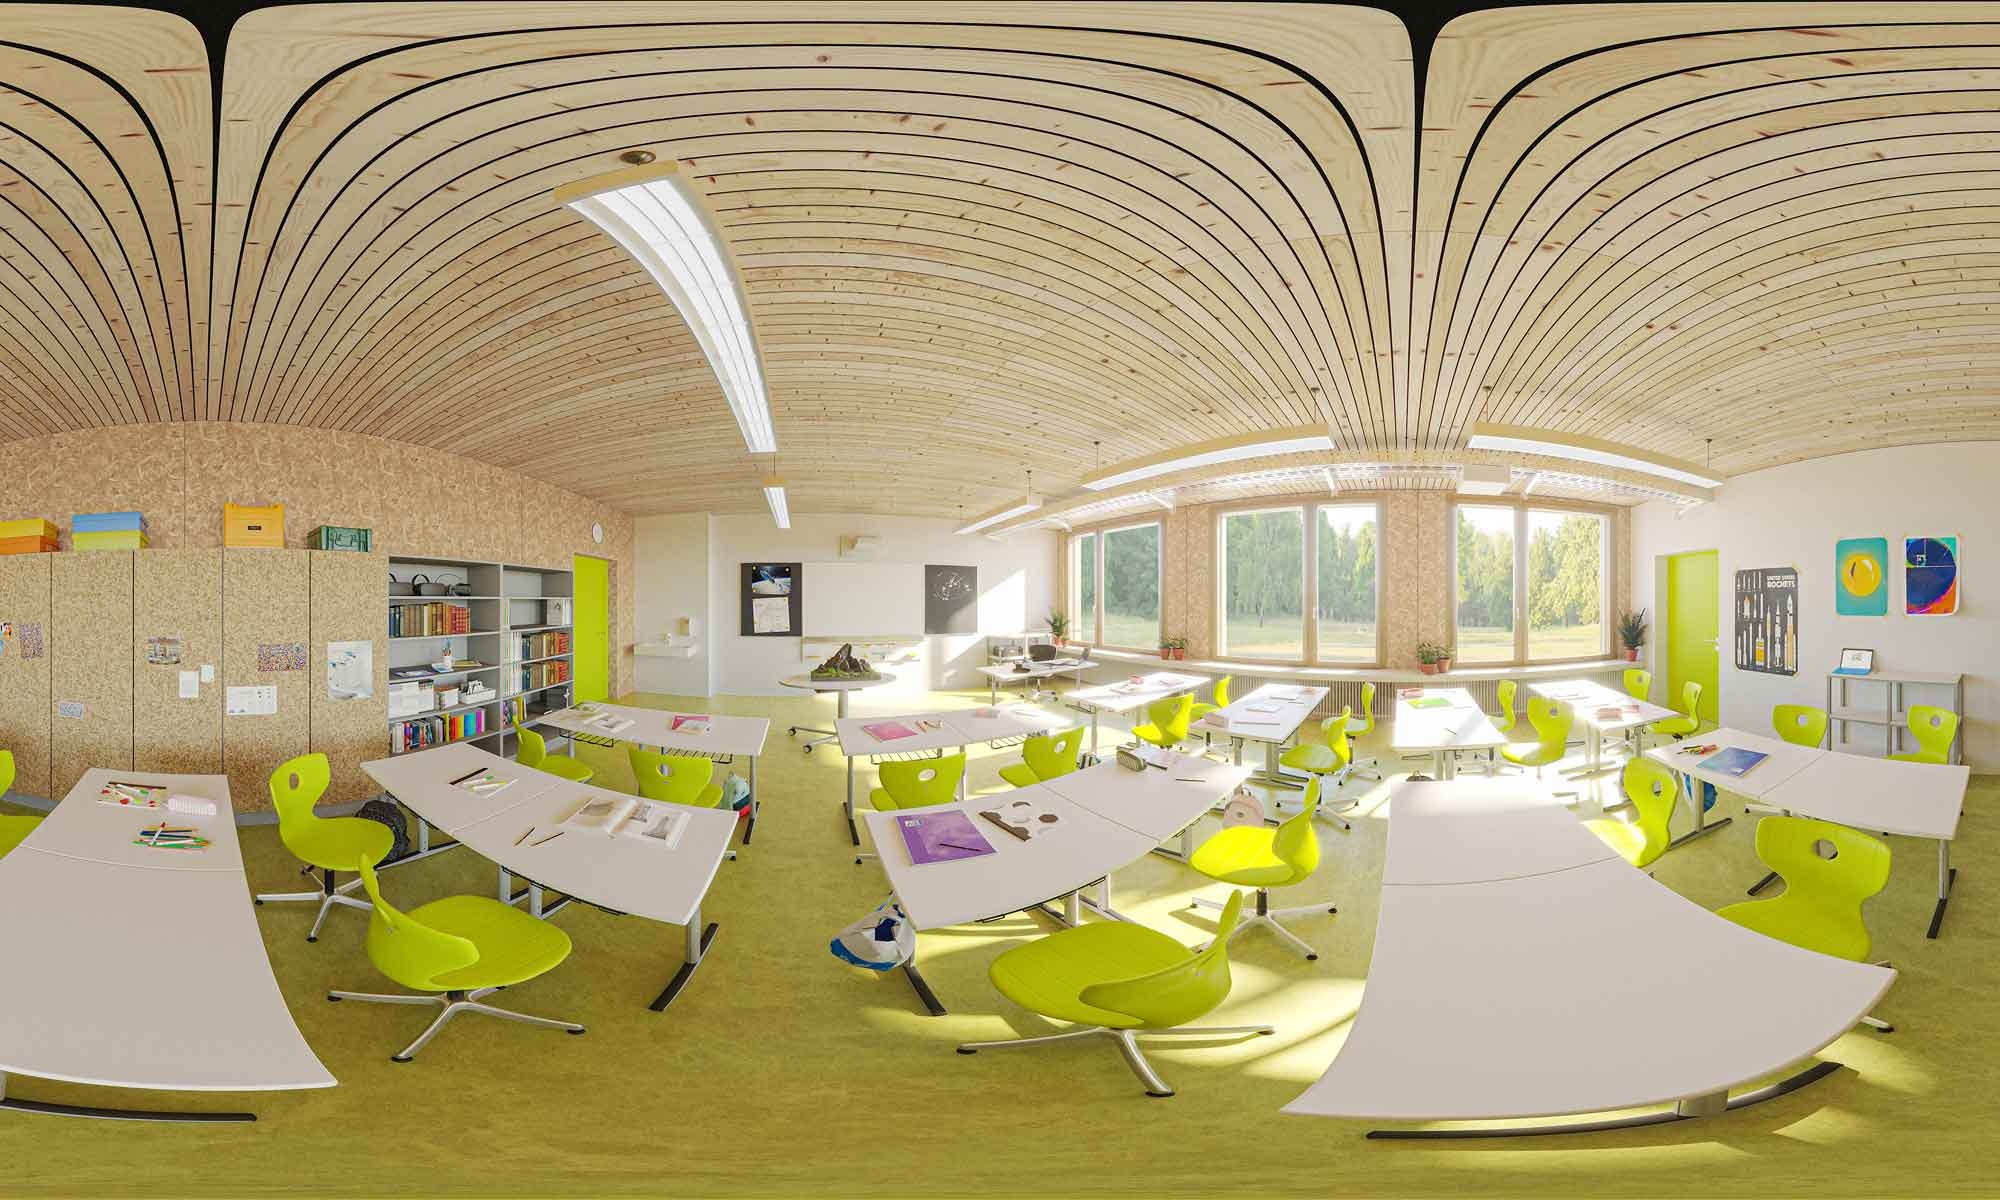 Le visuel en 3D offre un aperçu virtuel de l’école en bois